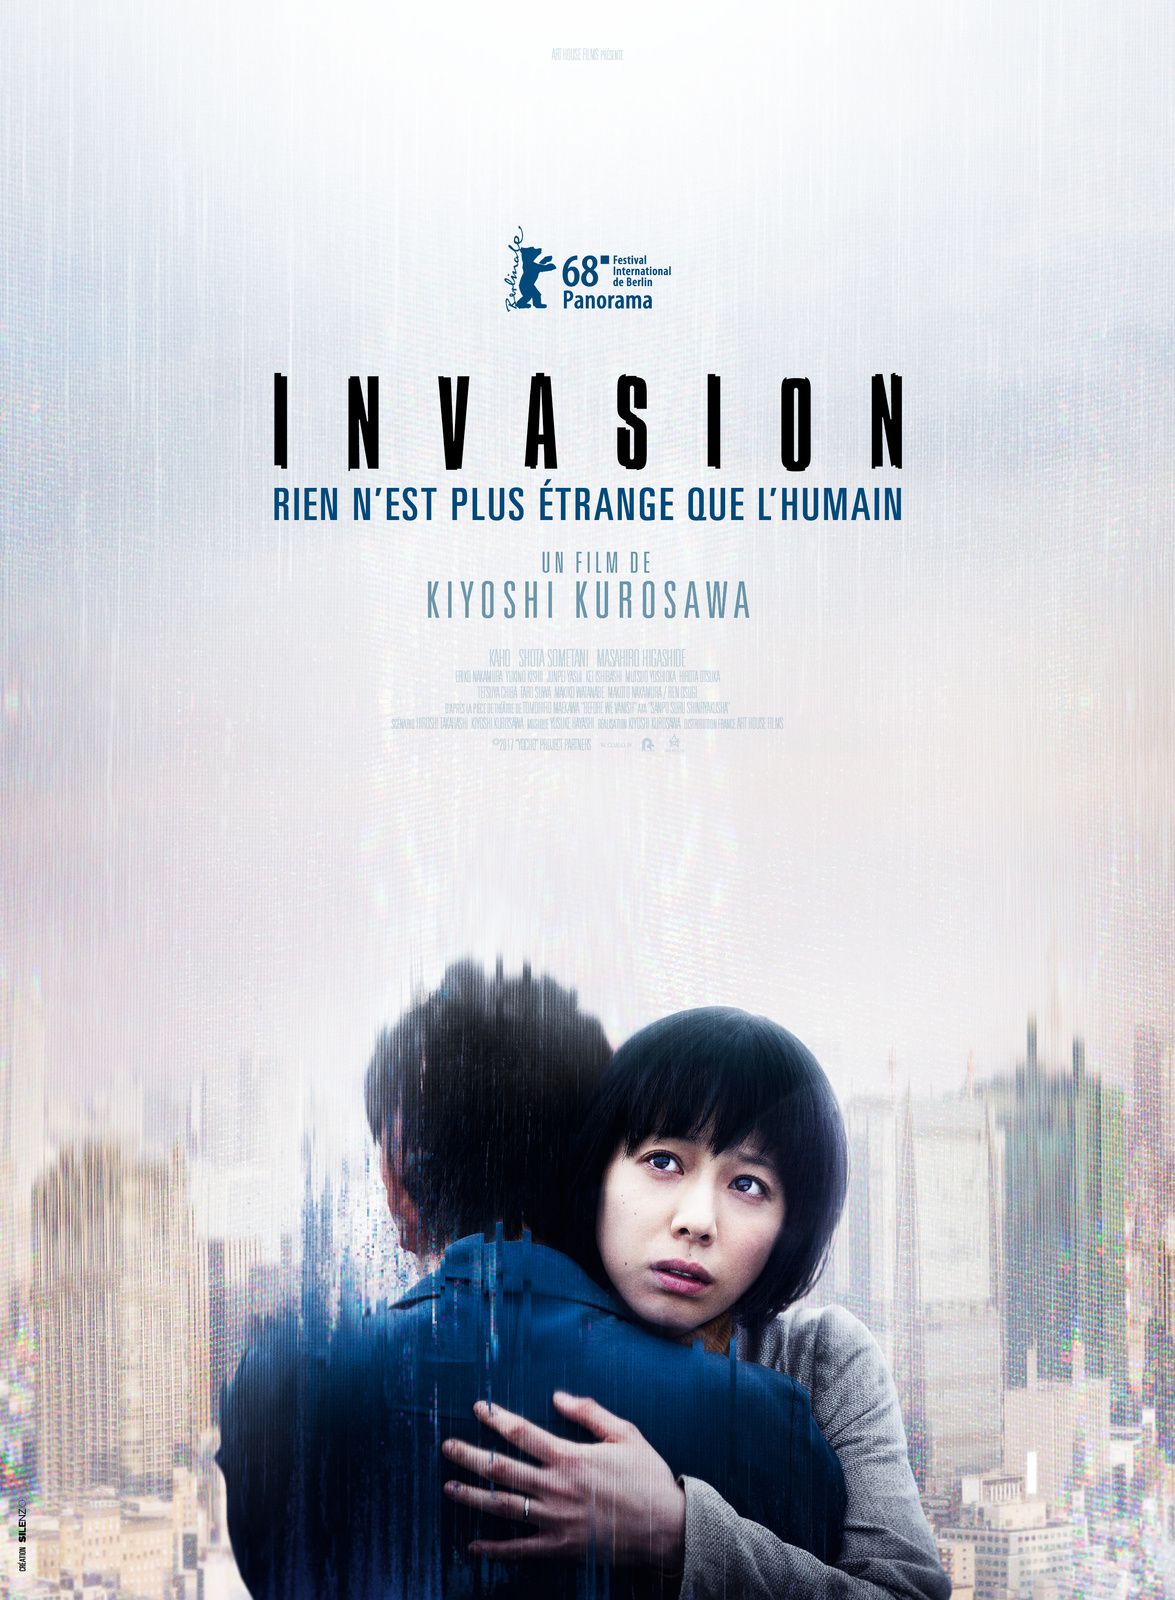 L'INVASION commence... Découvrez la bande-annonce du dernier Kiyoshi Kurosawa, en salles le 5 septembre 2018 !